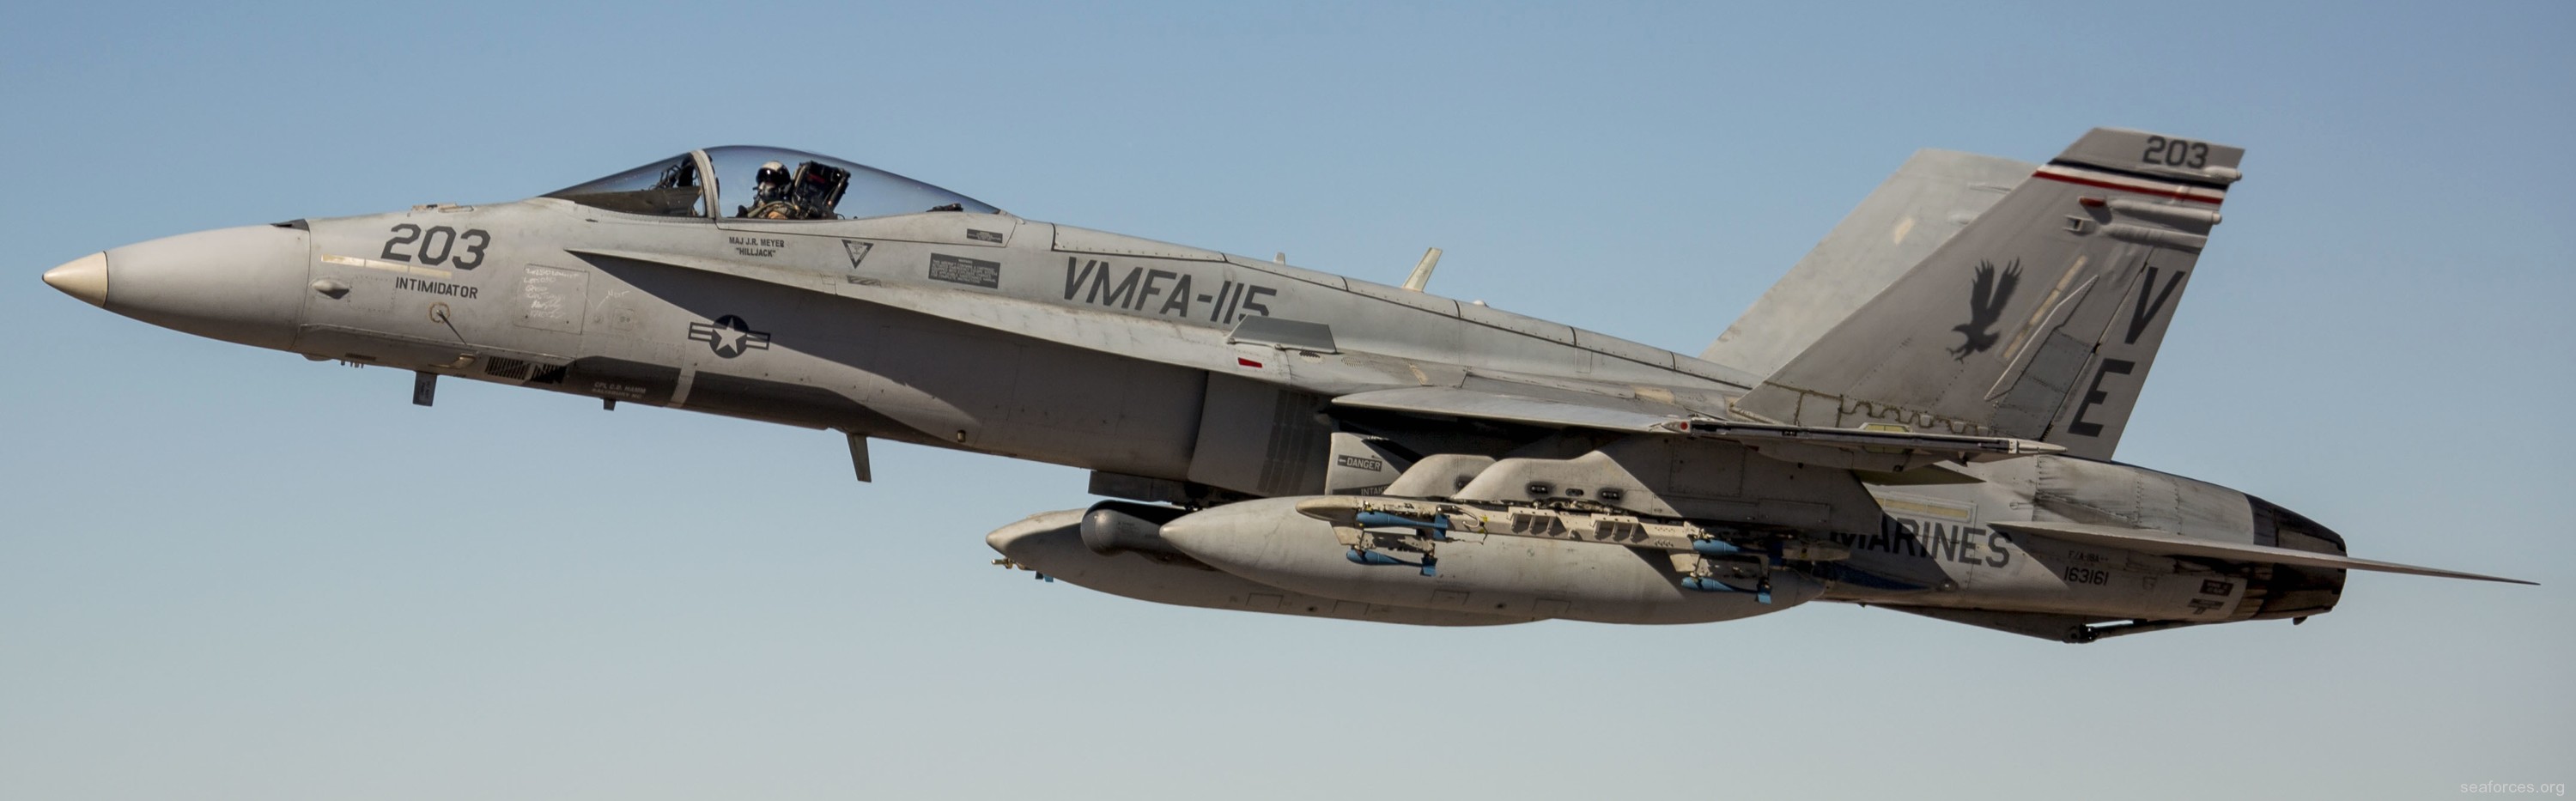 vmfa-115 silver eagles marine fighter attack squadron f/a-18a+ hornet 98